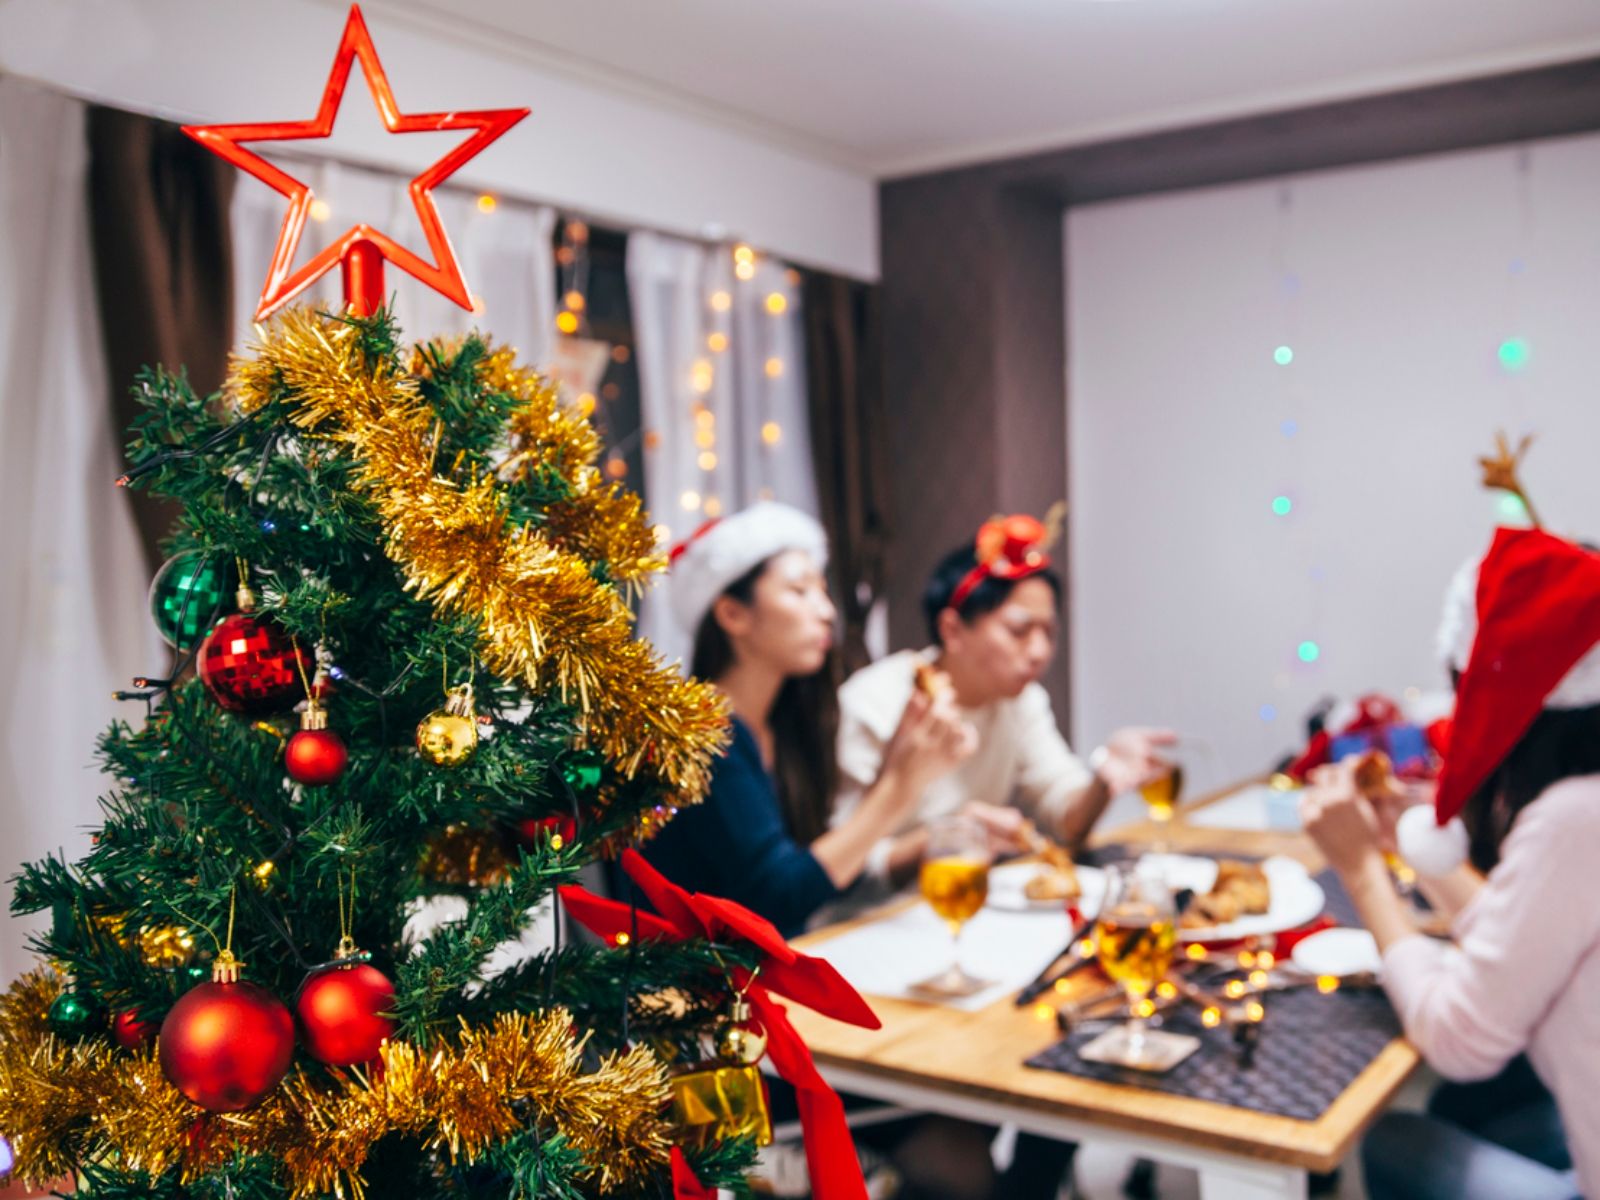 Entre costumbres propias y "ajenas", ¿cómo se celebra la Navidad en Japón?